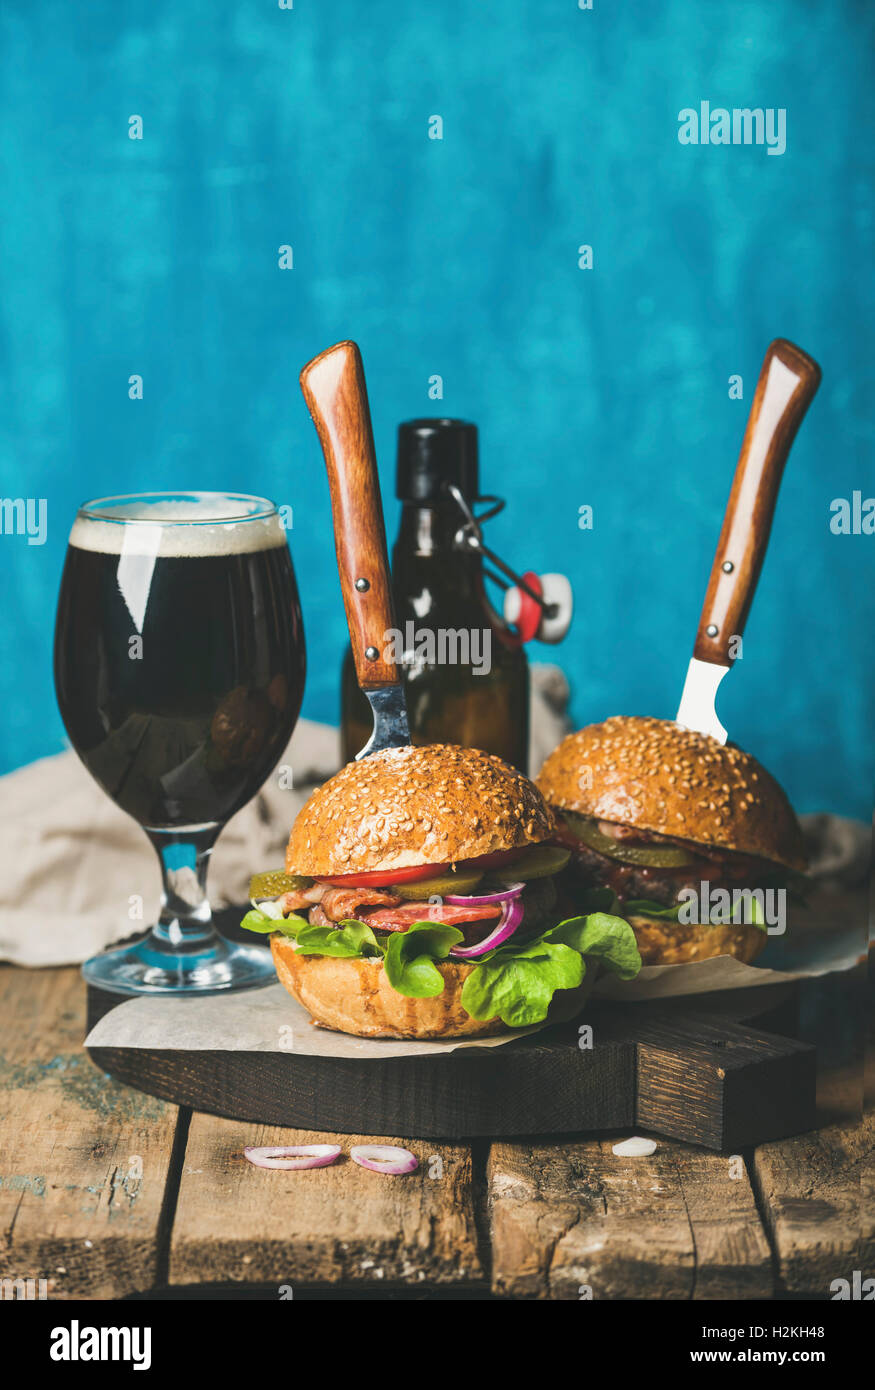 Due fatti in casa hamburger di manzo con pancetta croccante, cipolla, sottaceti, verdure, vetro e una bottiglia di birra scura sulla tavola di legno sopra la ruggine Foto Stock